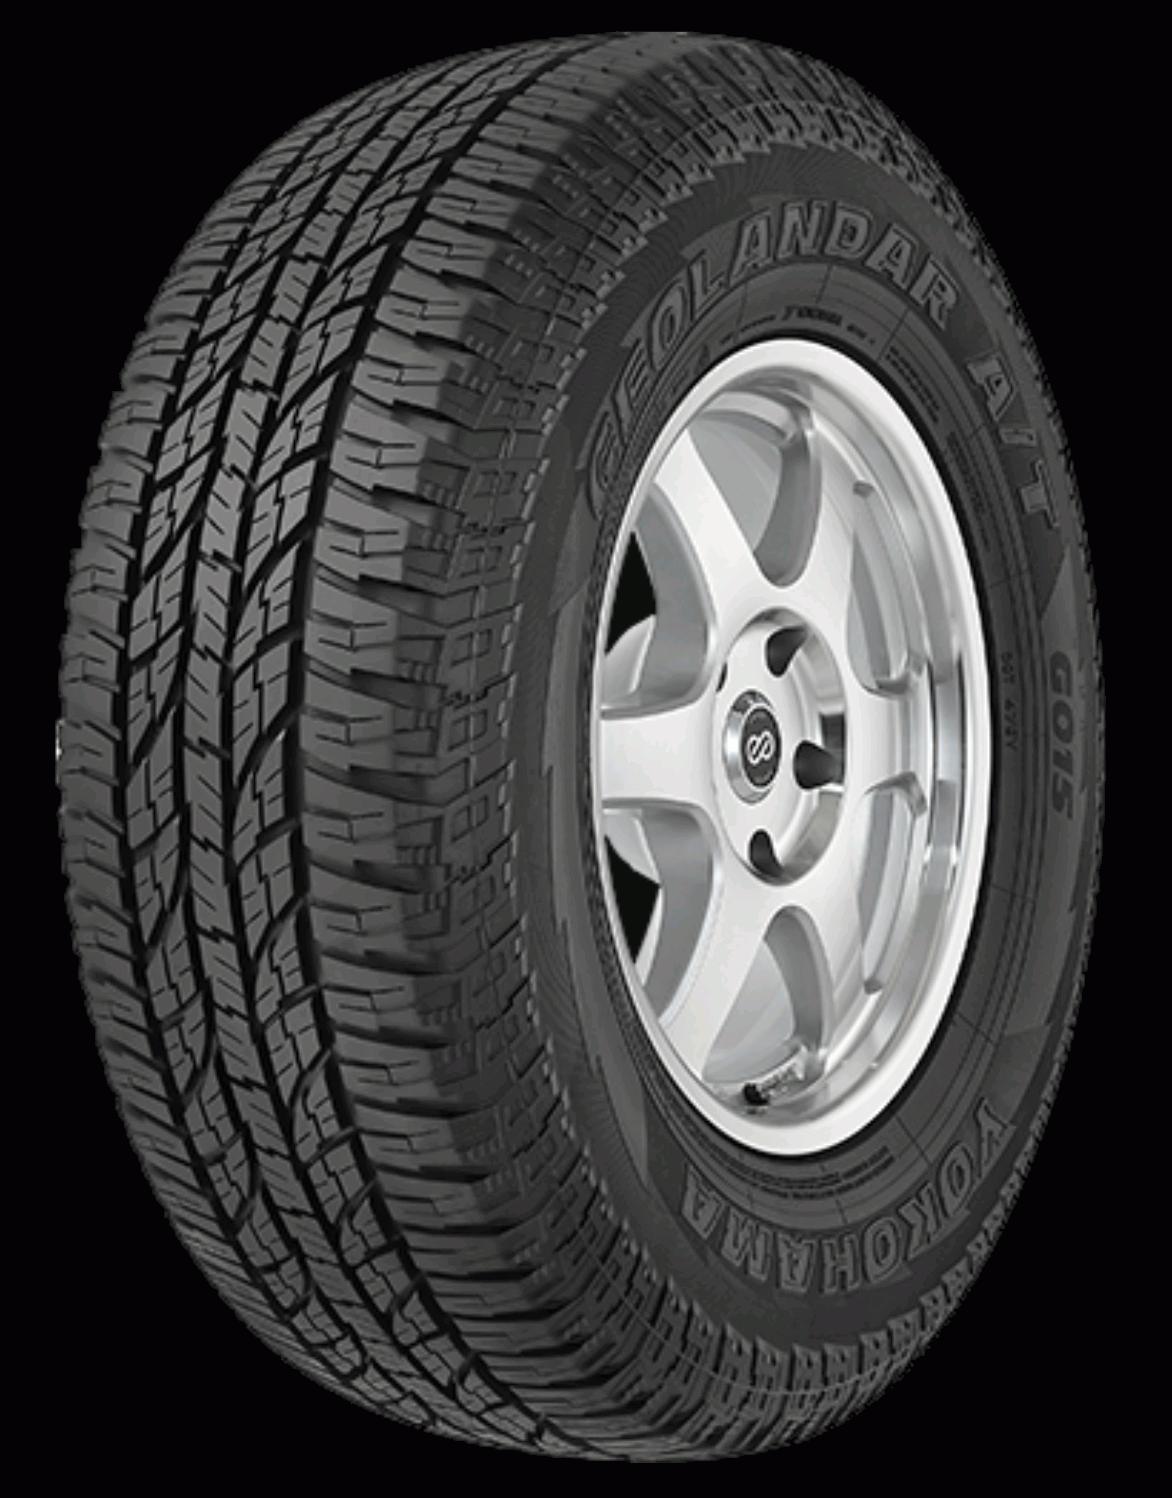 Yokohama Geolander AT G015 - Tyre Reviews and Tests